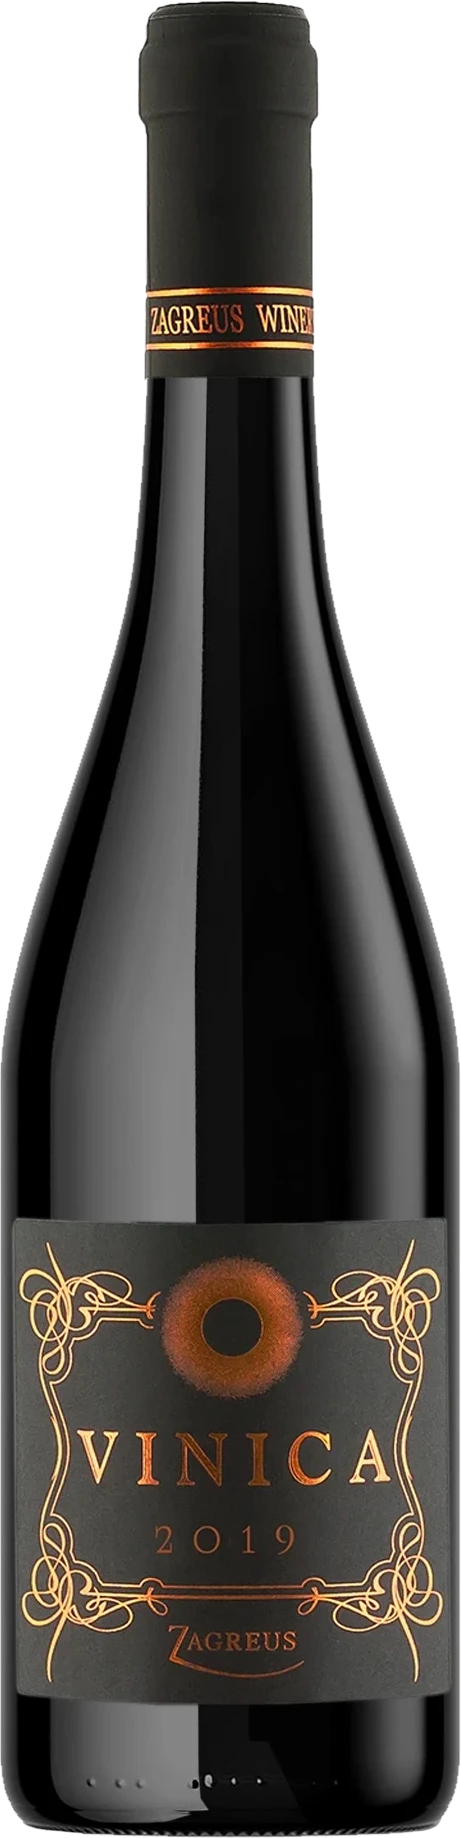 Vinica bottle